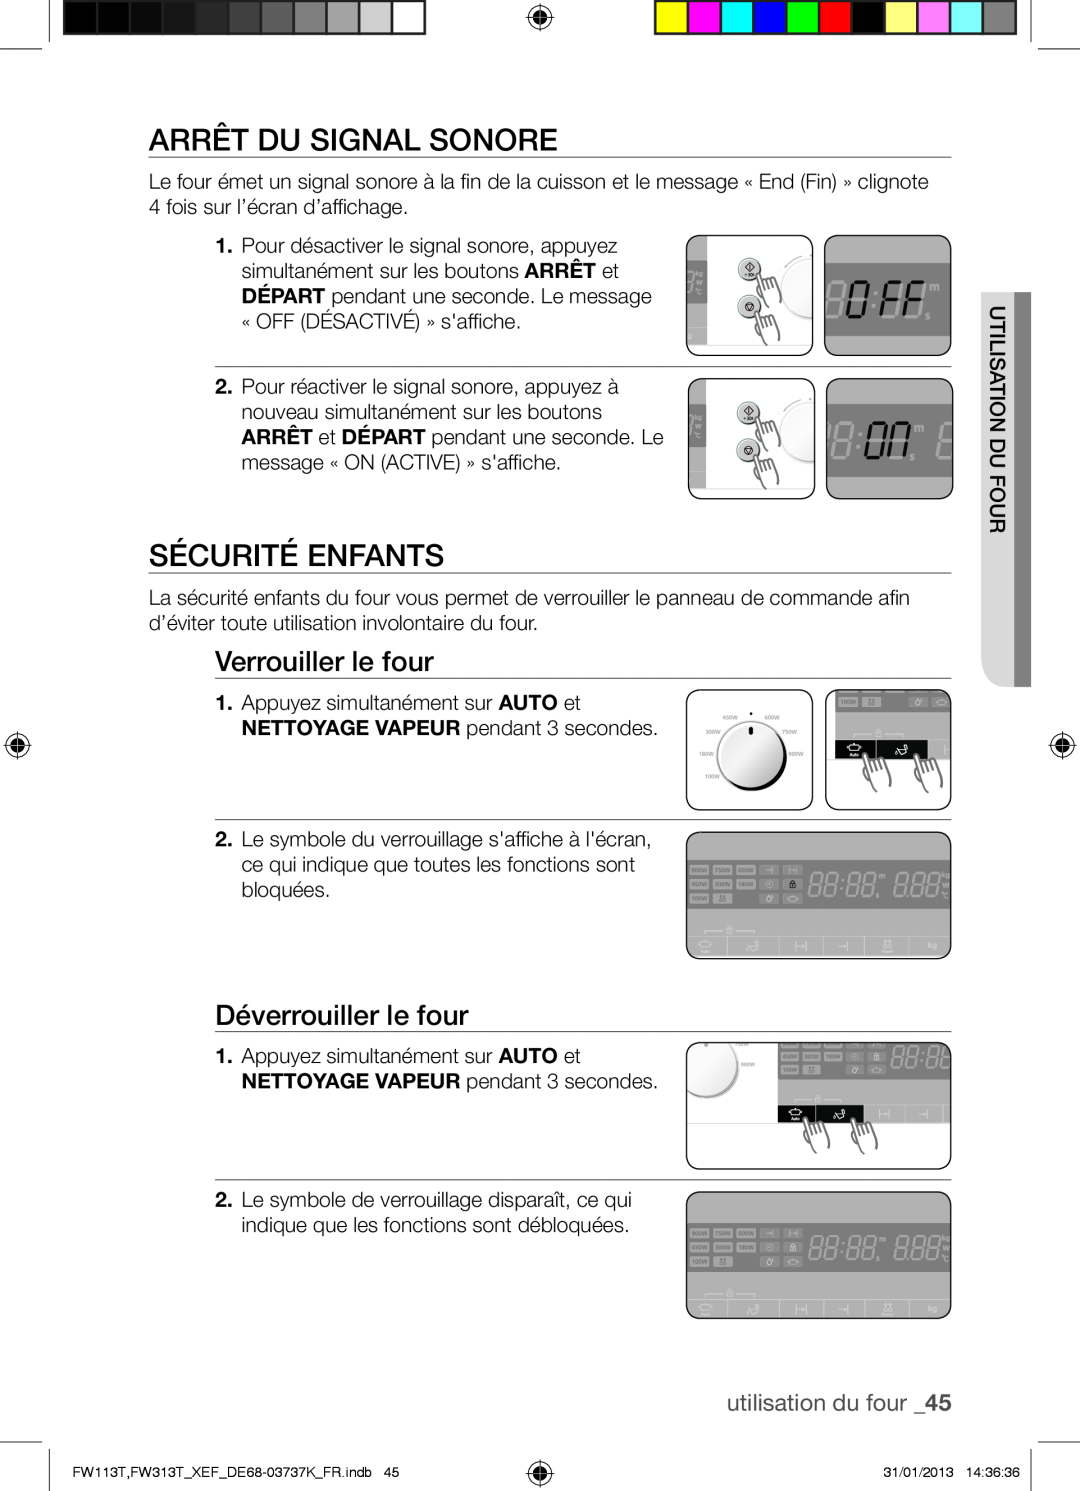 Samsung FW113T002/XEF manual Arrêt Du Signal Sonore, Sécurité Enfants, Verrouiller le four, Déverrouiller le four 